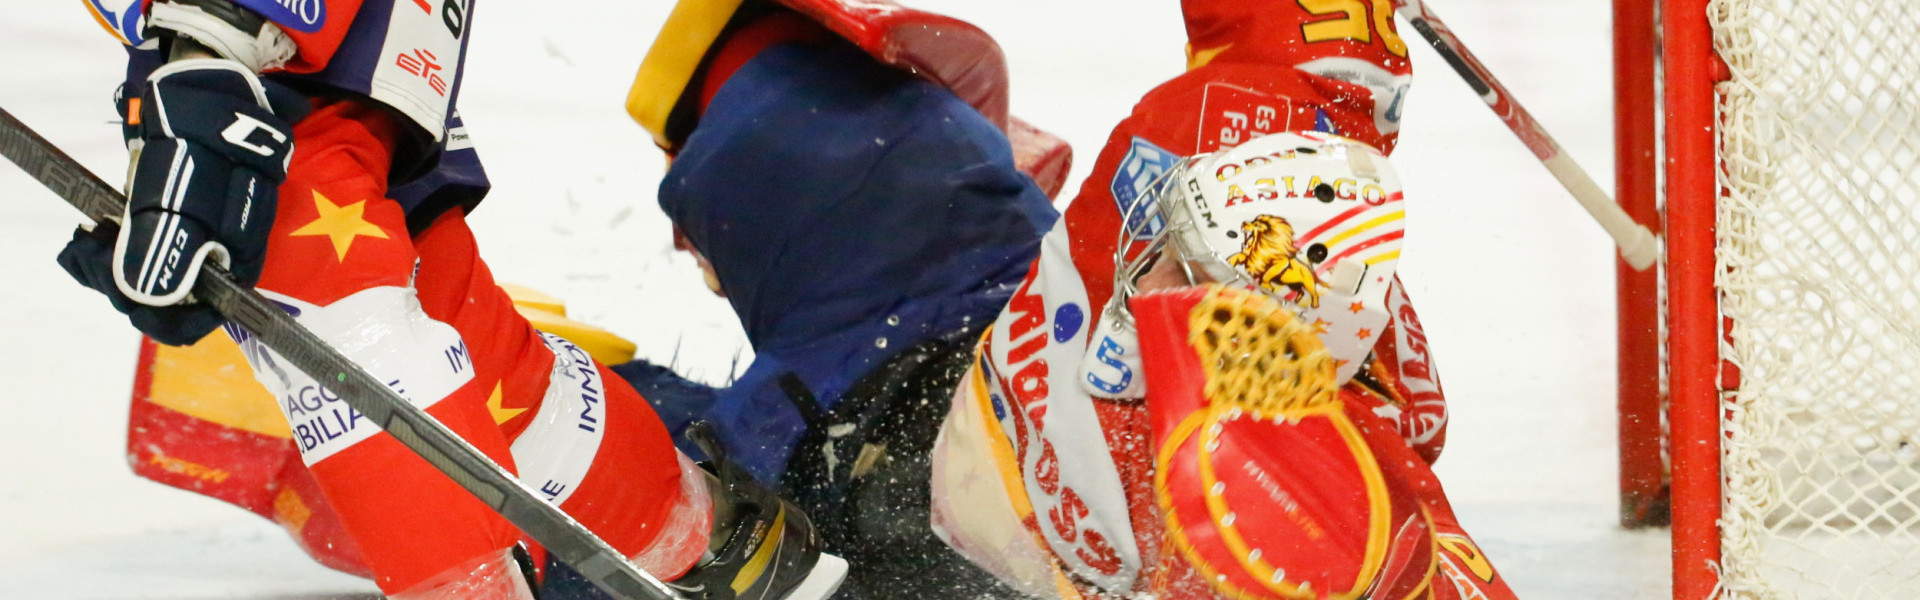 Asiago Hockey weist aktuell den höchsten Gegentorschnitt aller Teams in der ICE Hockey League auf